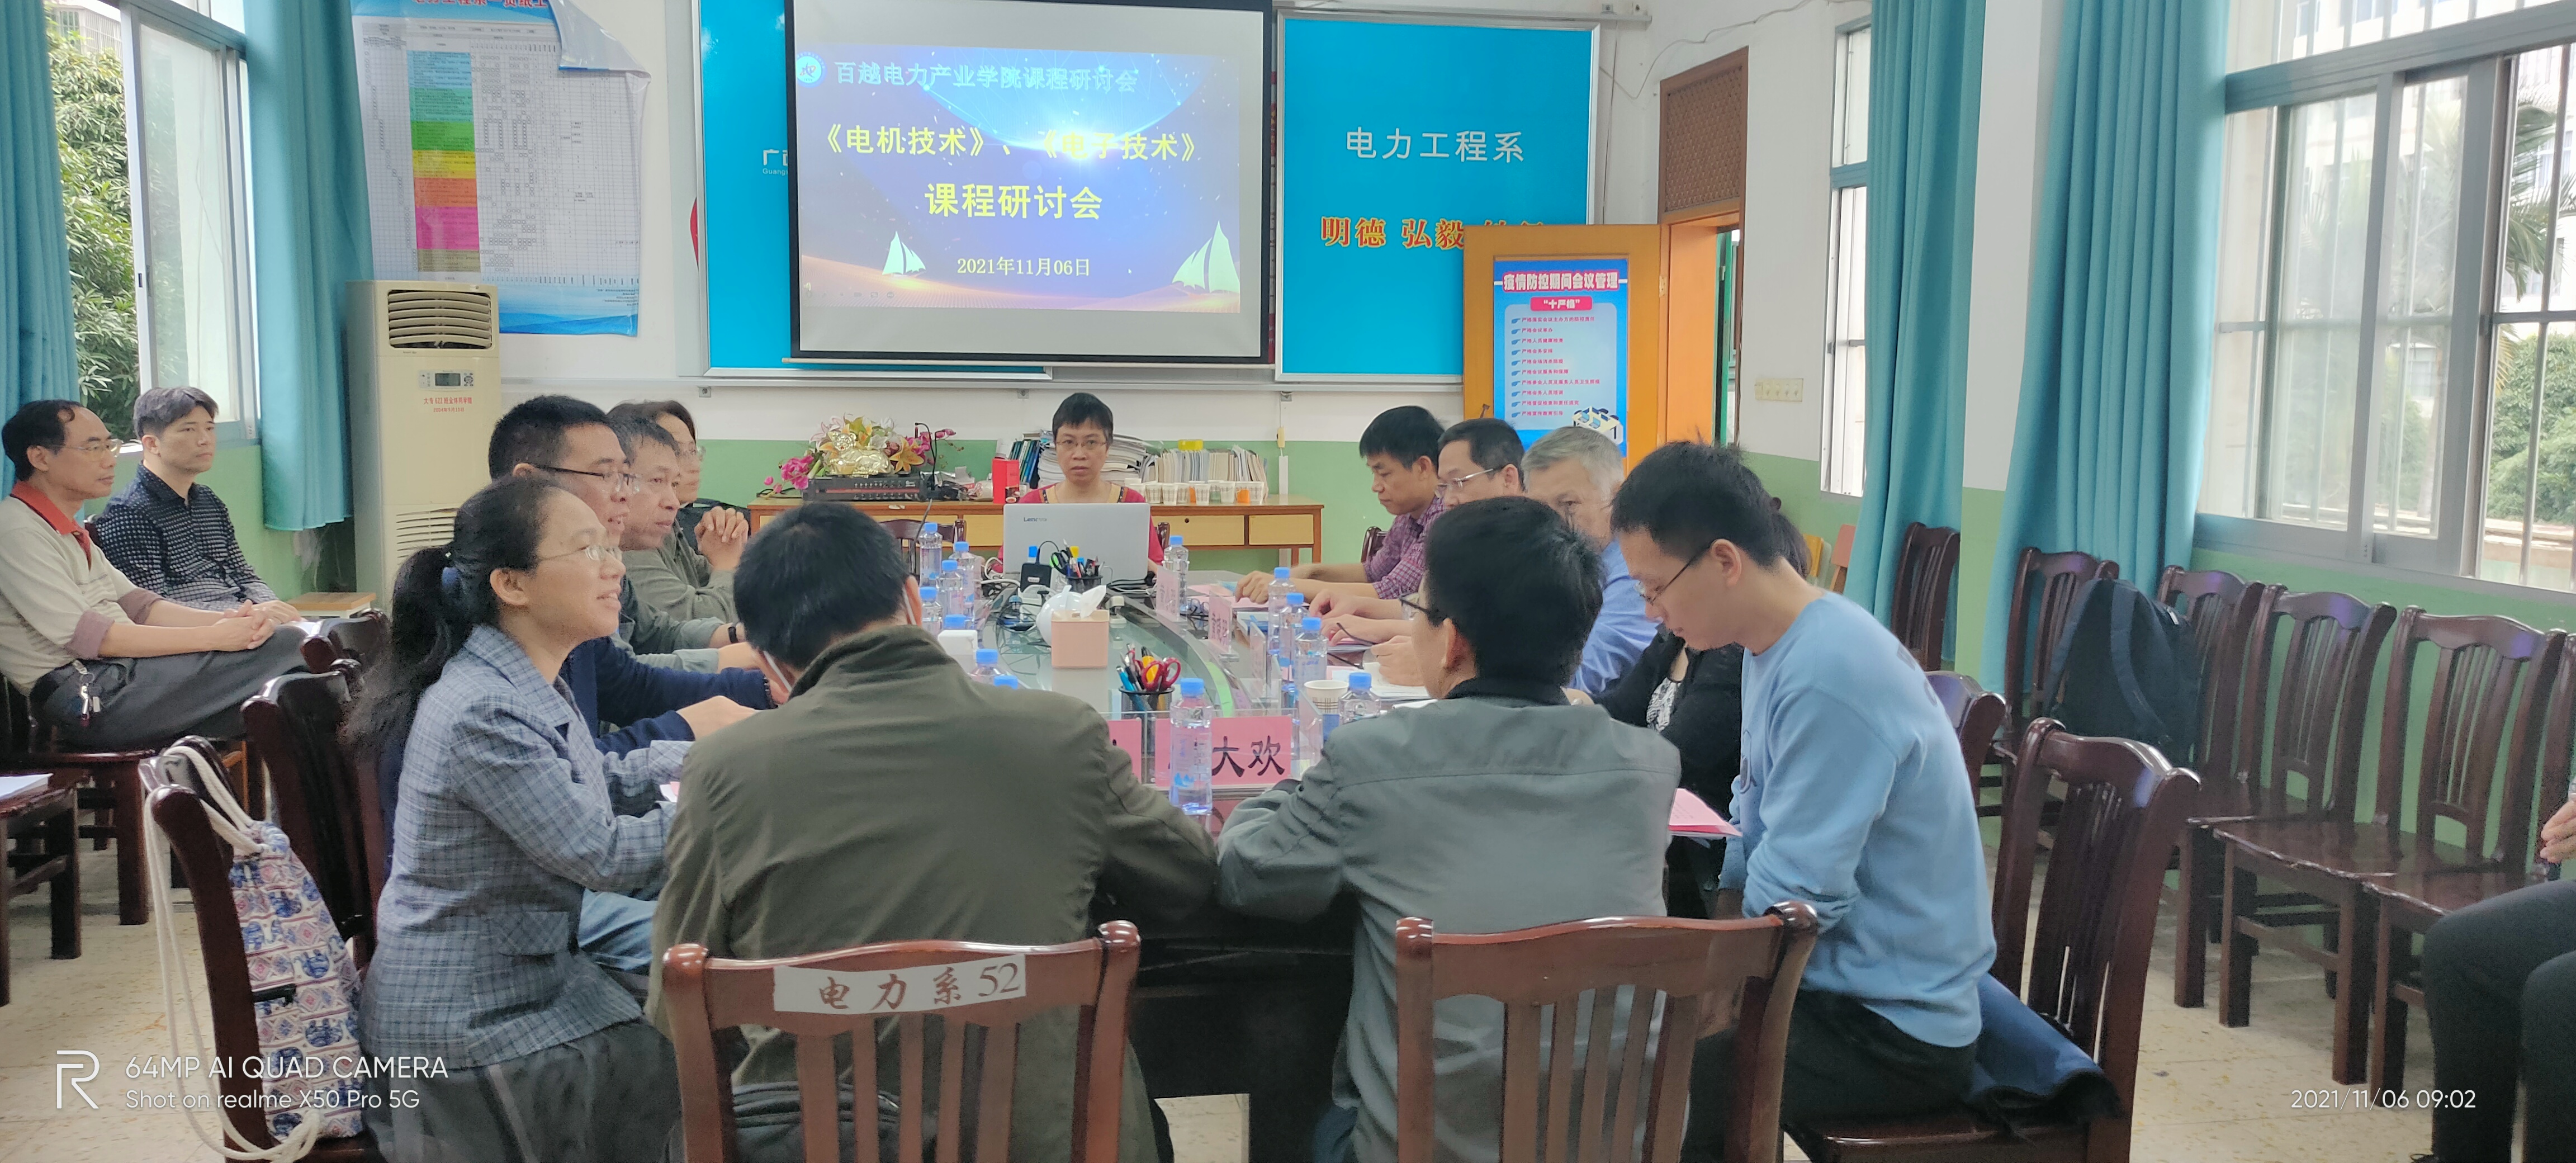 2021年11月6日，党员老师钟秋组织召开《电机技术》《电子技术》课程研讨会。